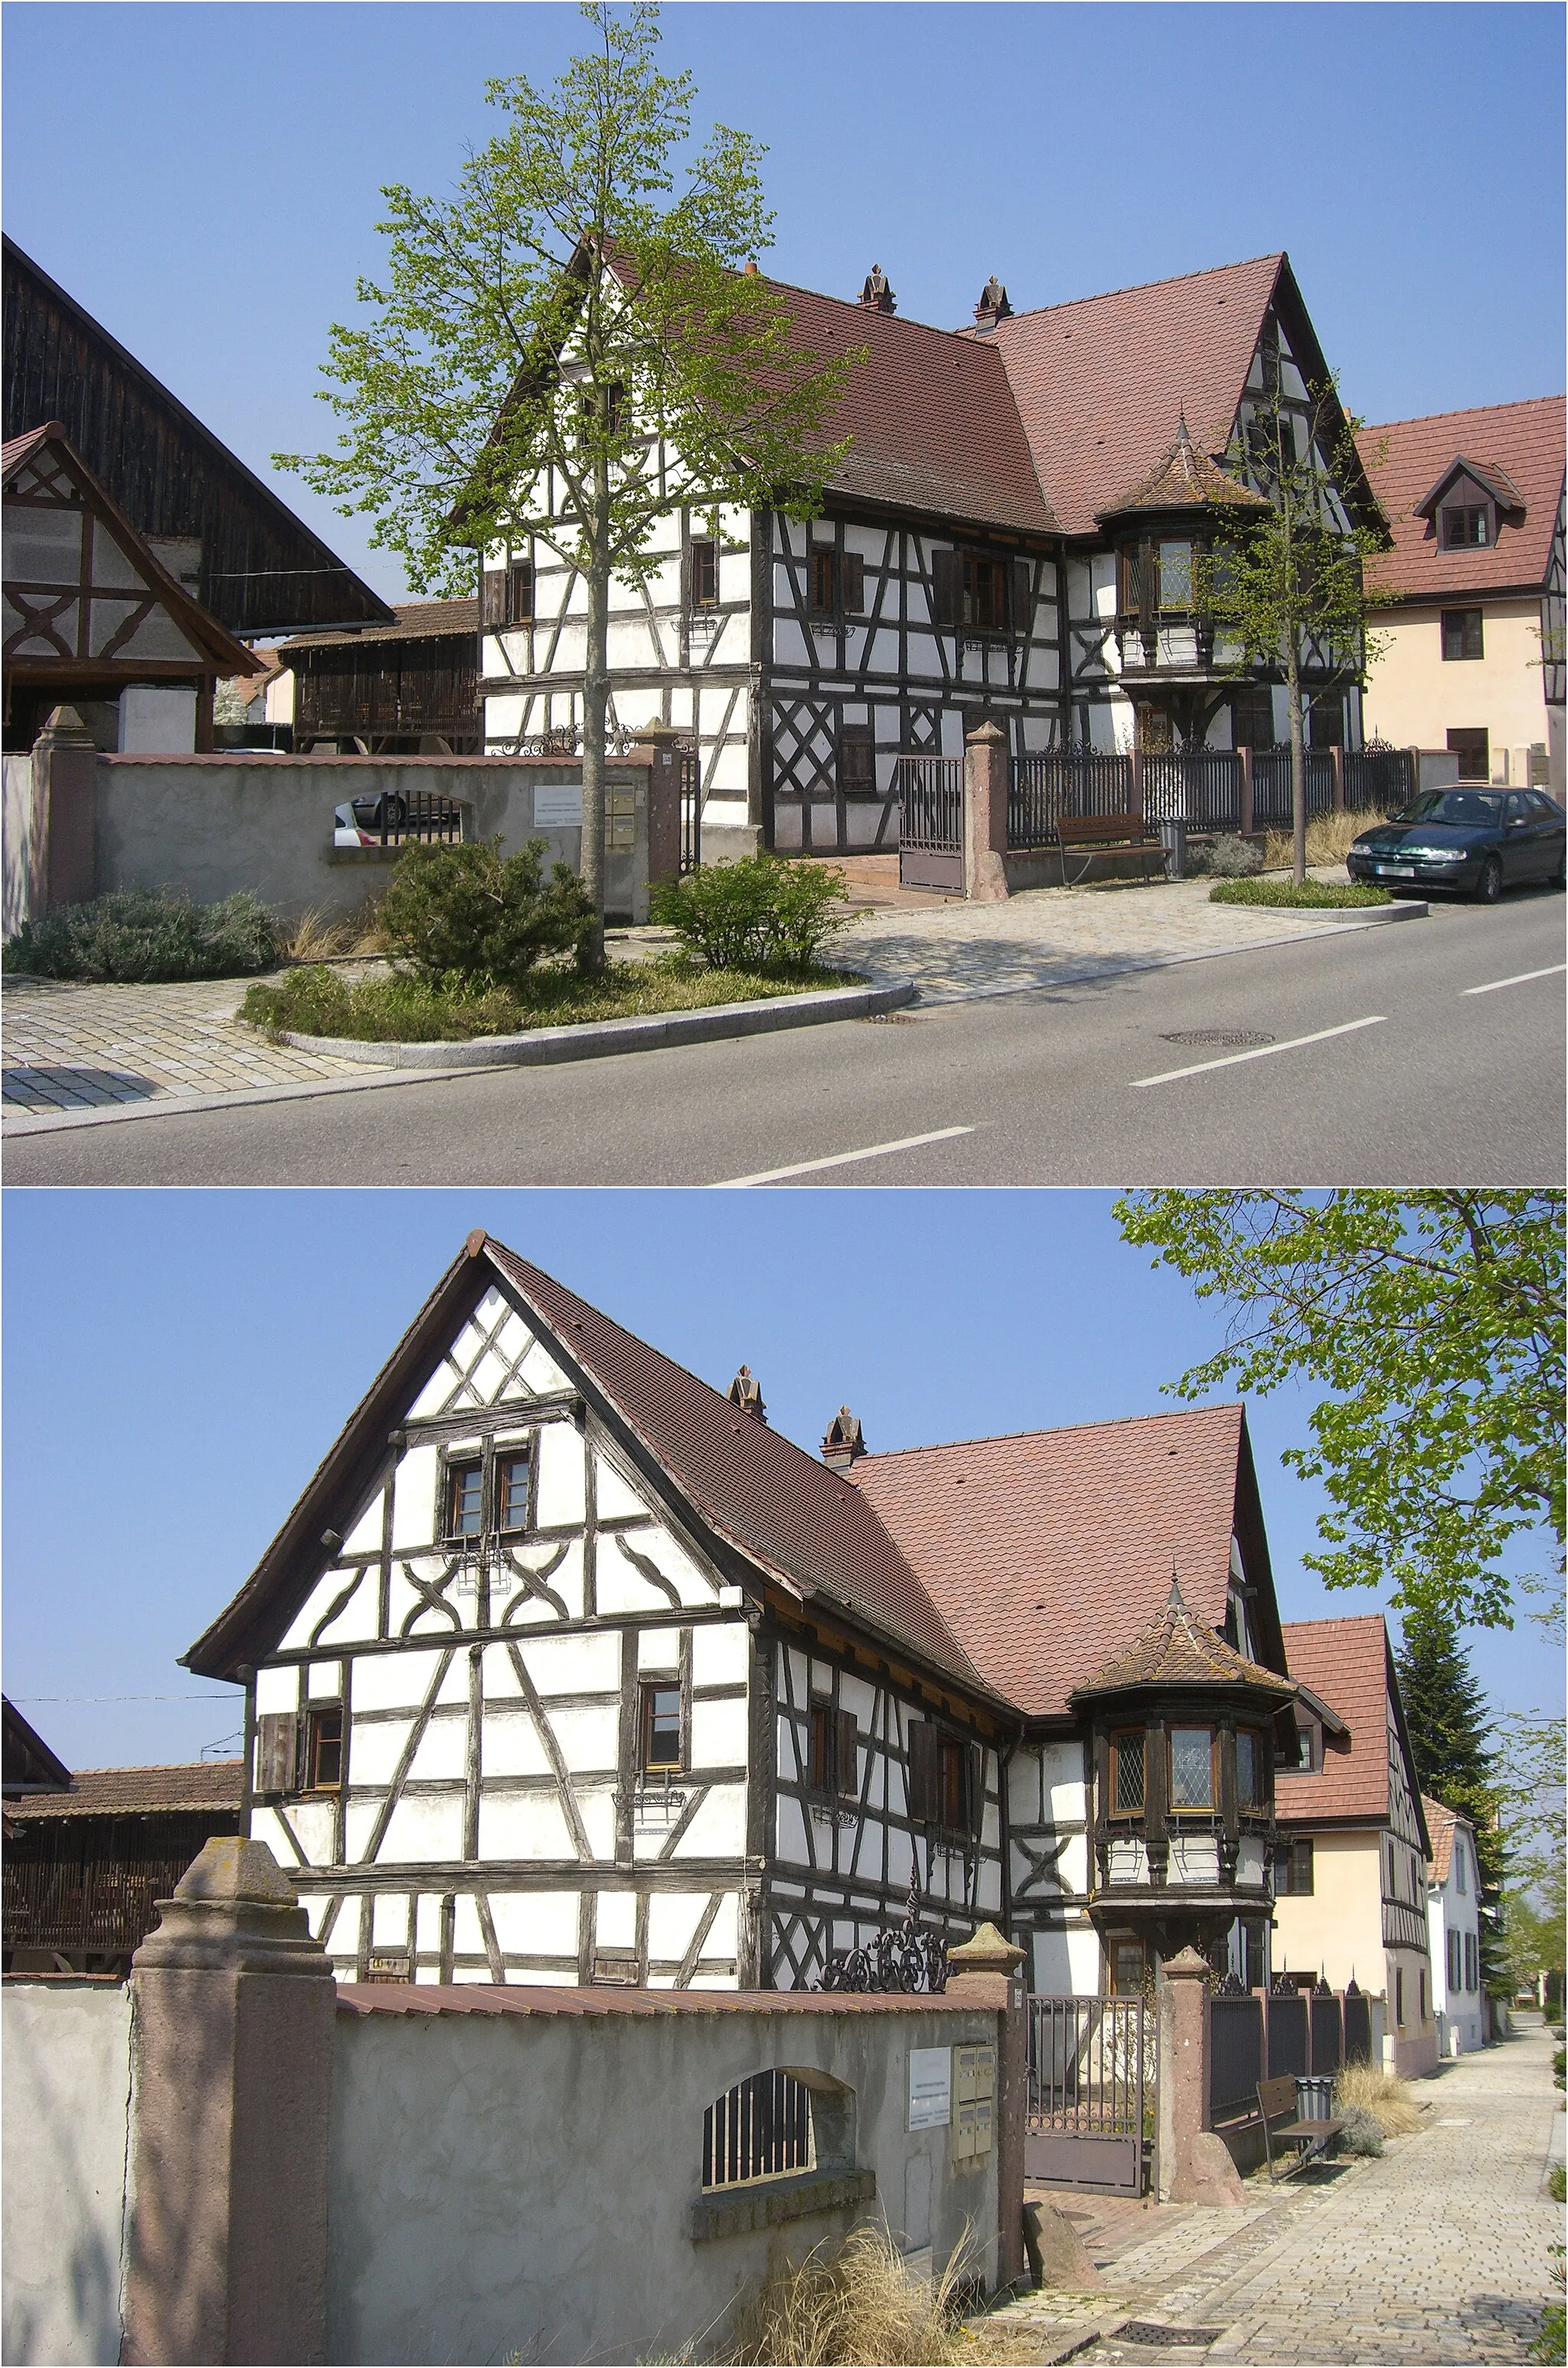 Photo showing: Maison alsacienne à colombages, maison à pans de bois et oriel d'angle, datant de 1680, inscrit aux monuments historiques.